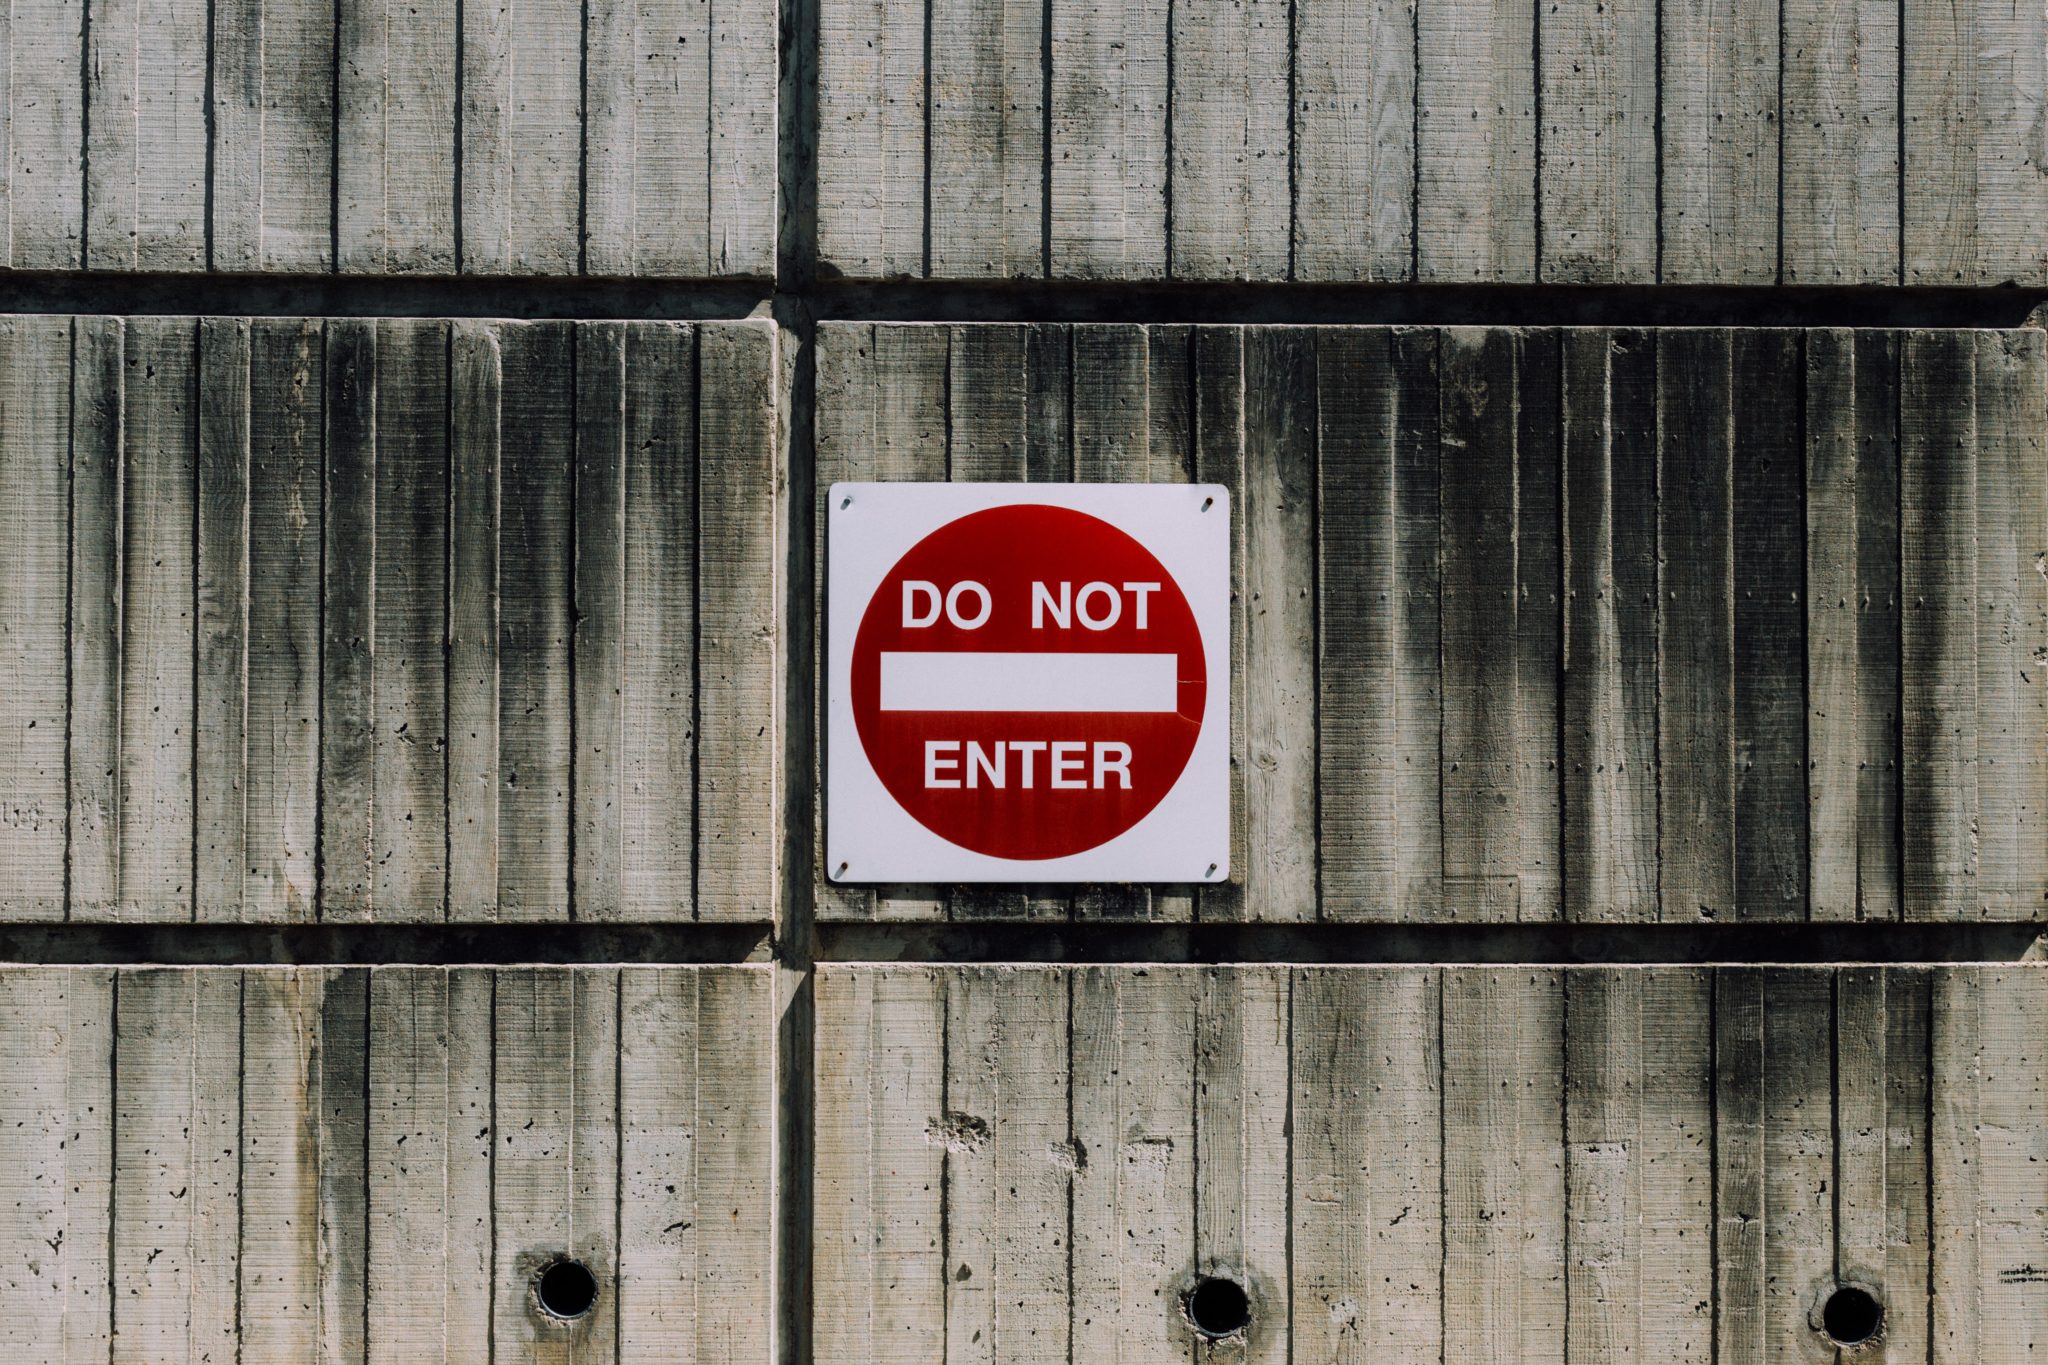 "DO NOT ENTER" Photo by Kyle Glenn on Unsplash